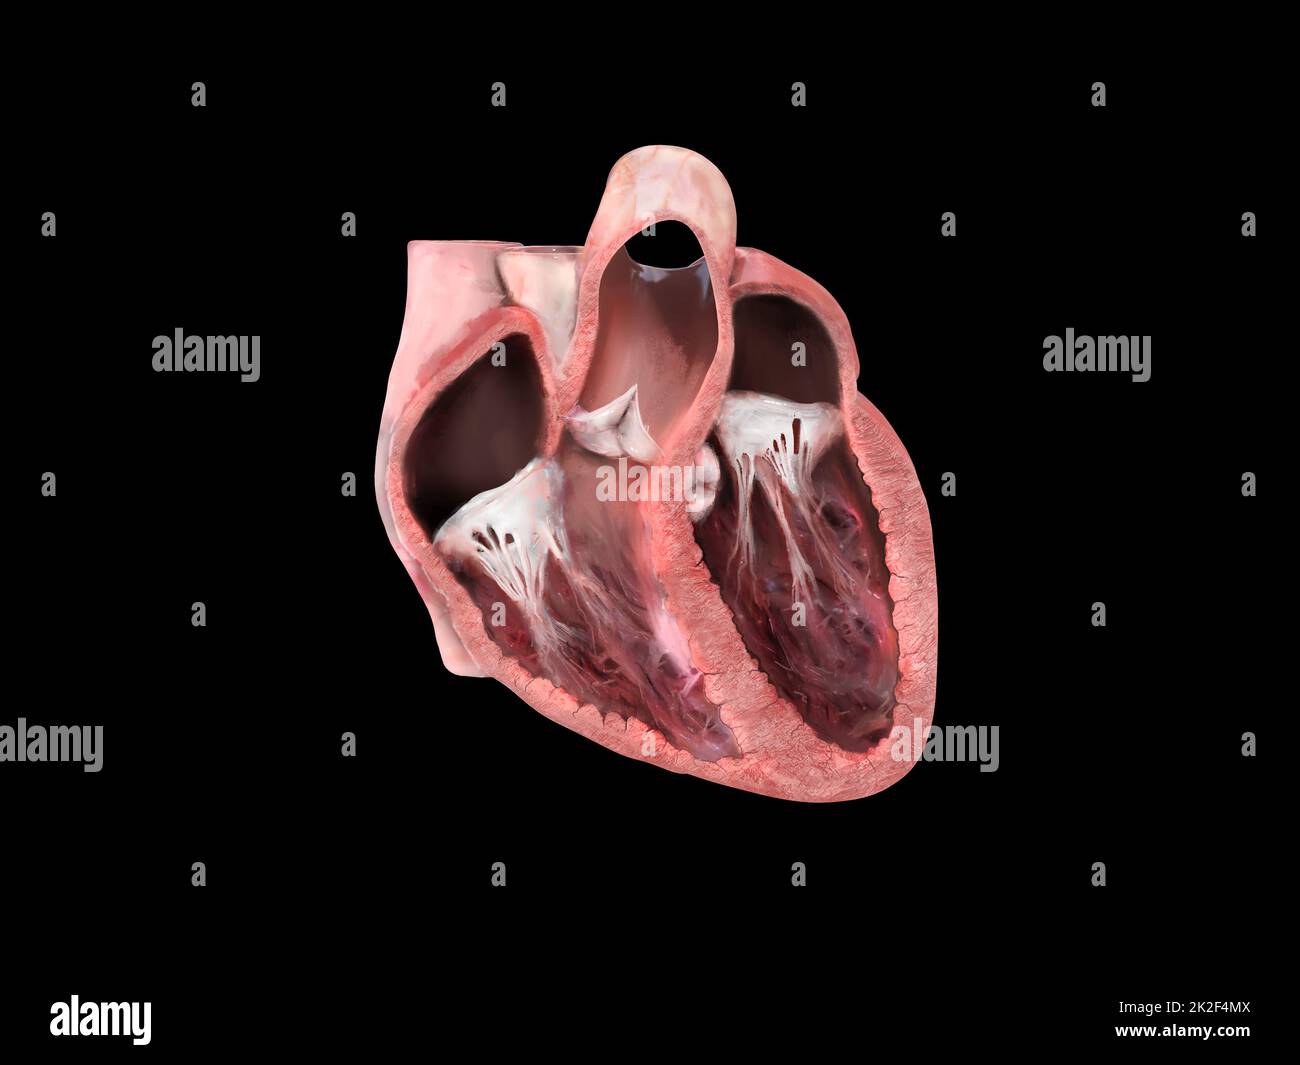 Die Anatomie des menschlichen Herzens. Schulungsdiagramm, das den Blutfluss mit markierten Hauptteilen zeigt. Anatomischer Herzabschnitt, rechter und linker Ventrikel und Septum, Herzklappe, Herzinfarkt, Herzprobleme, 3D-Rendering Stockfoto